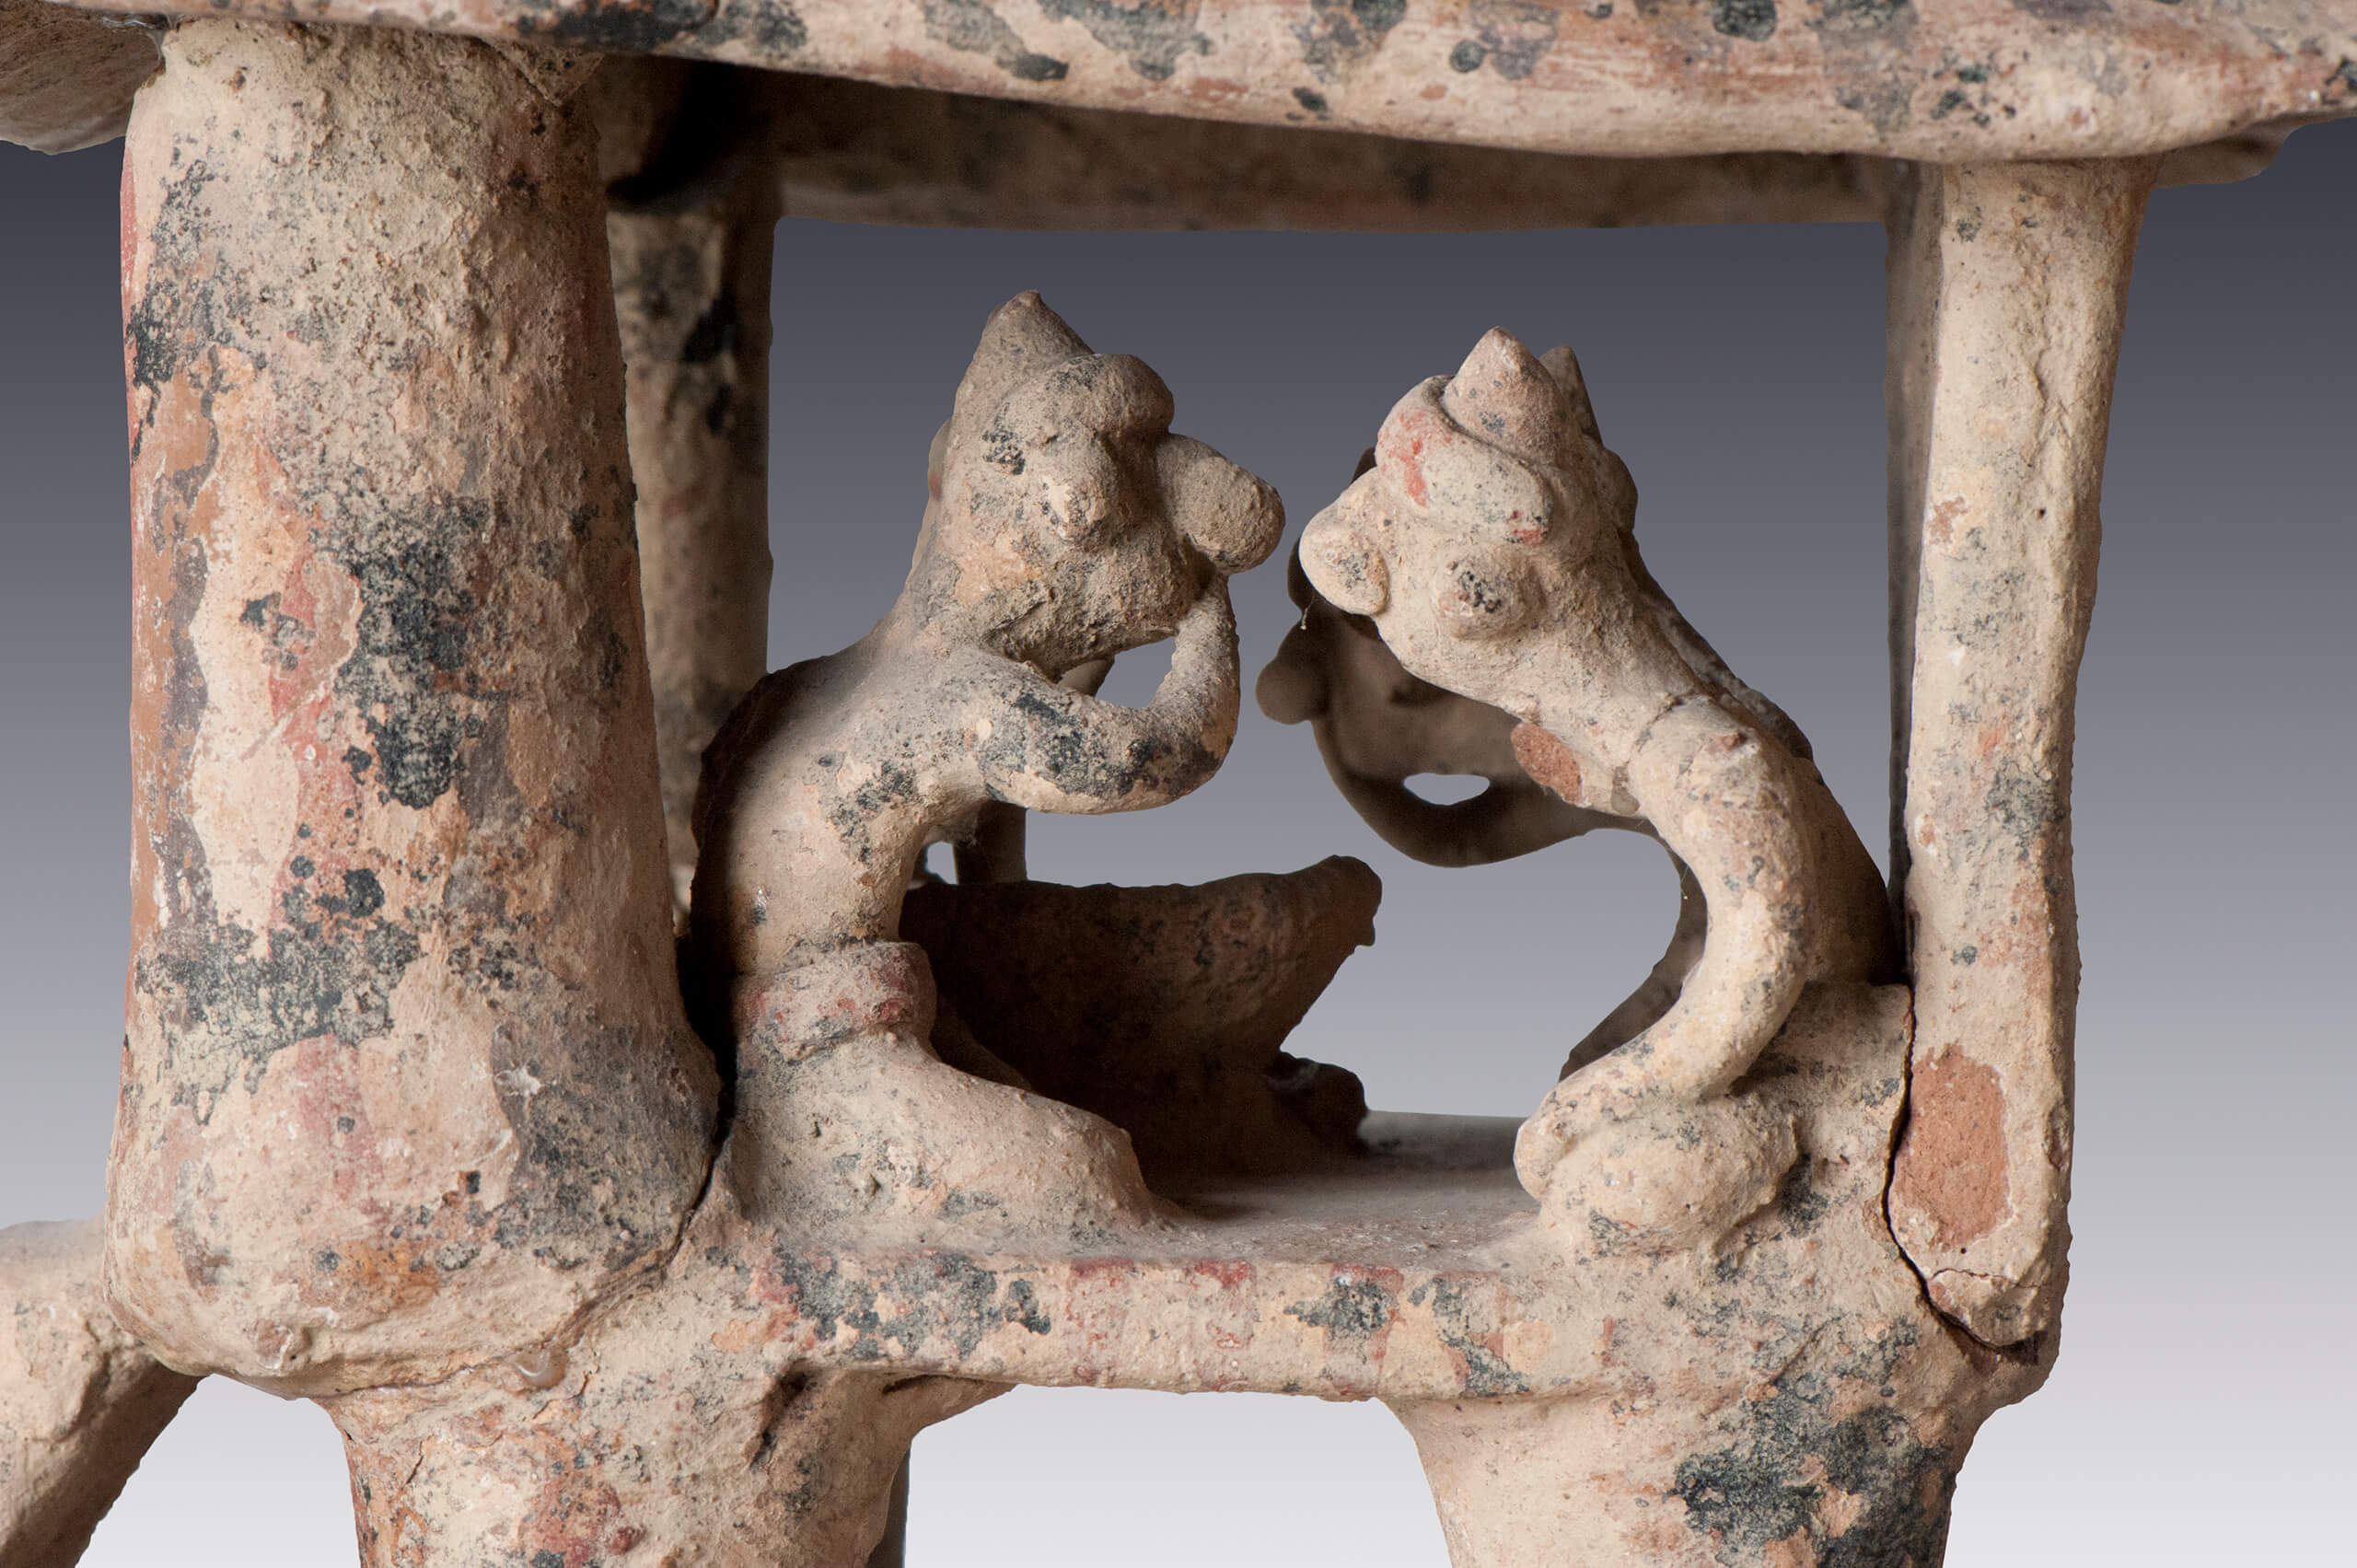 Maqueta con escena ritual | El México antiguo. Salas de Arte Prehispánico | Museo Amparo, Puebla